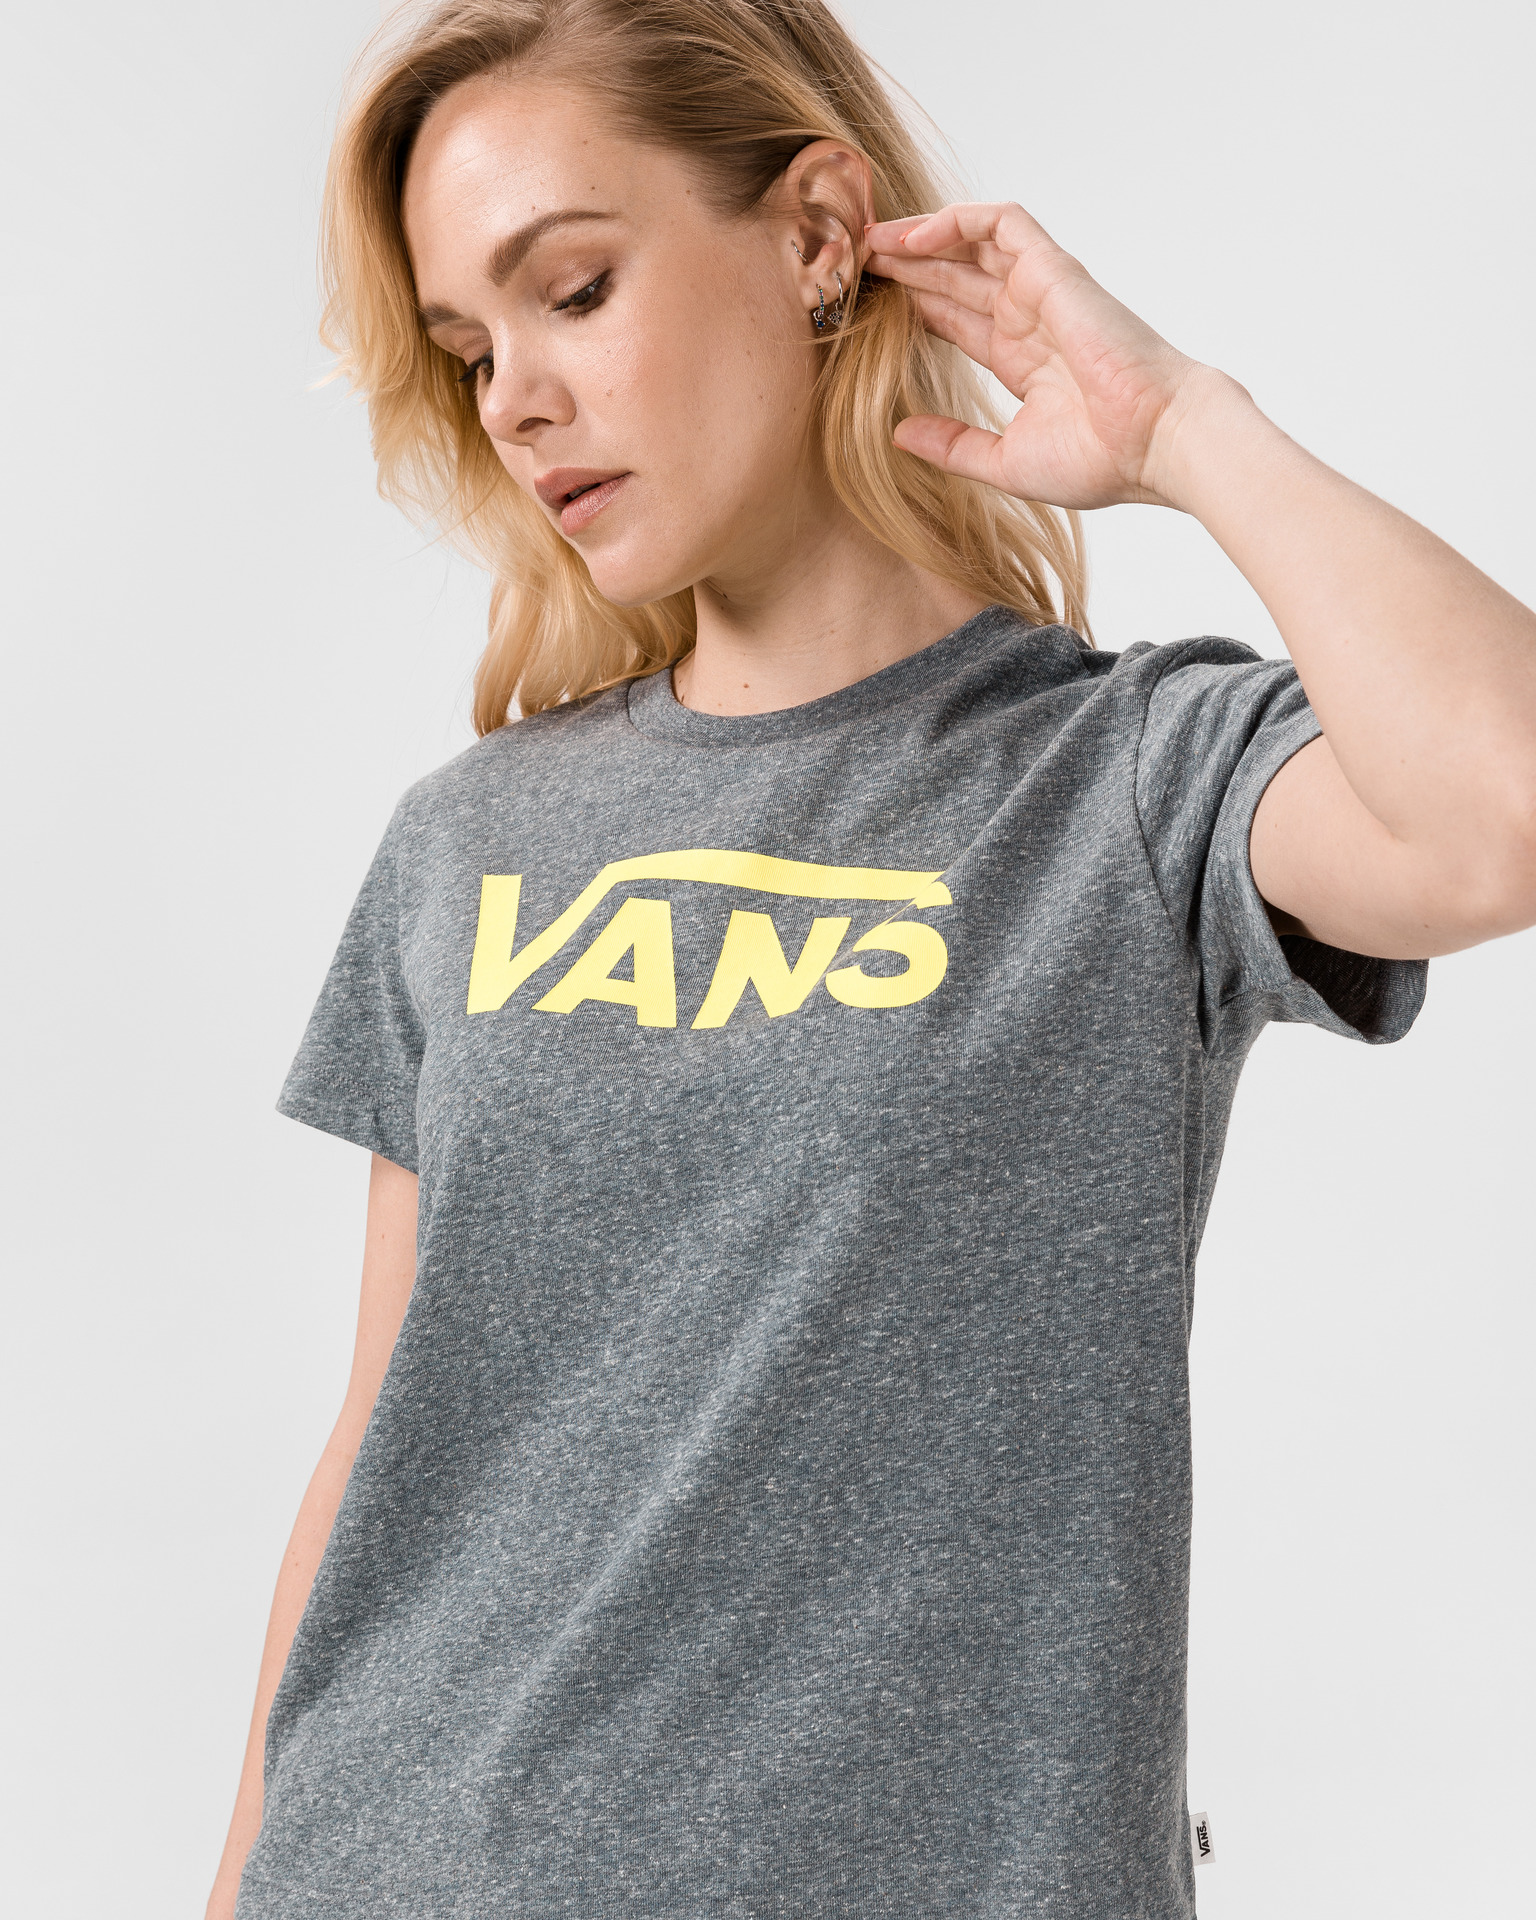 Vans - Flying V T-shirt